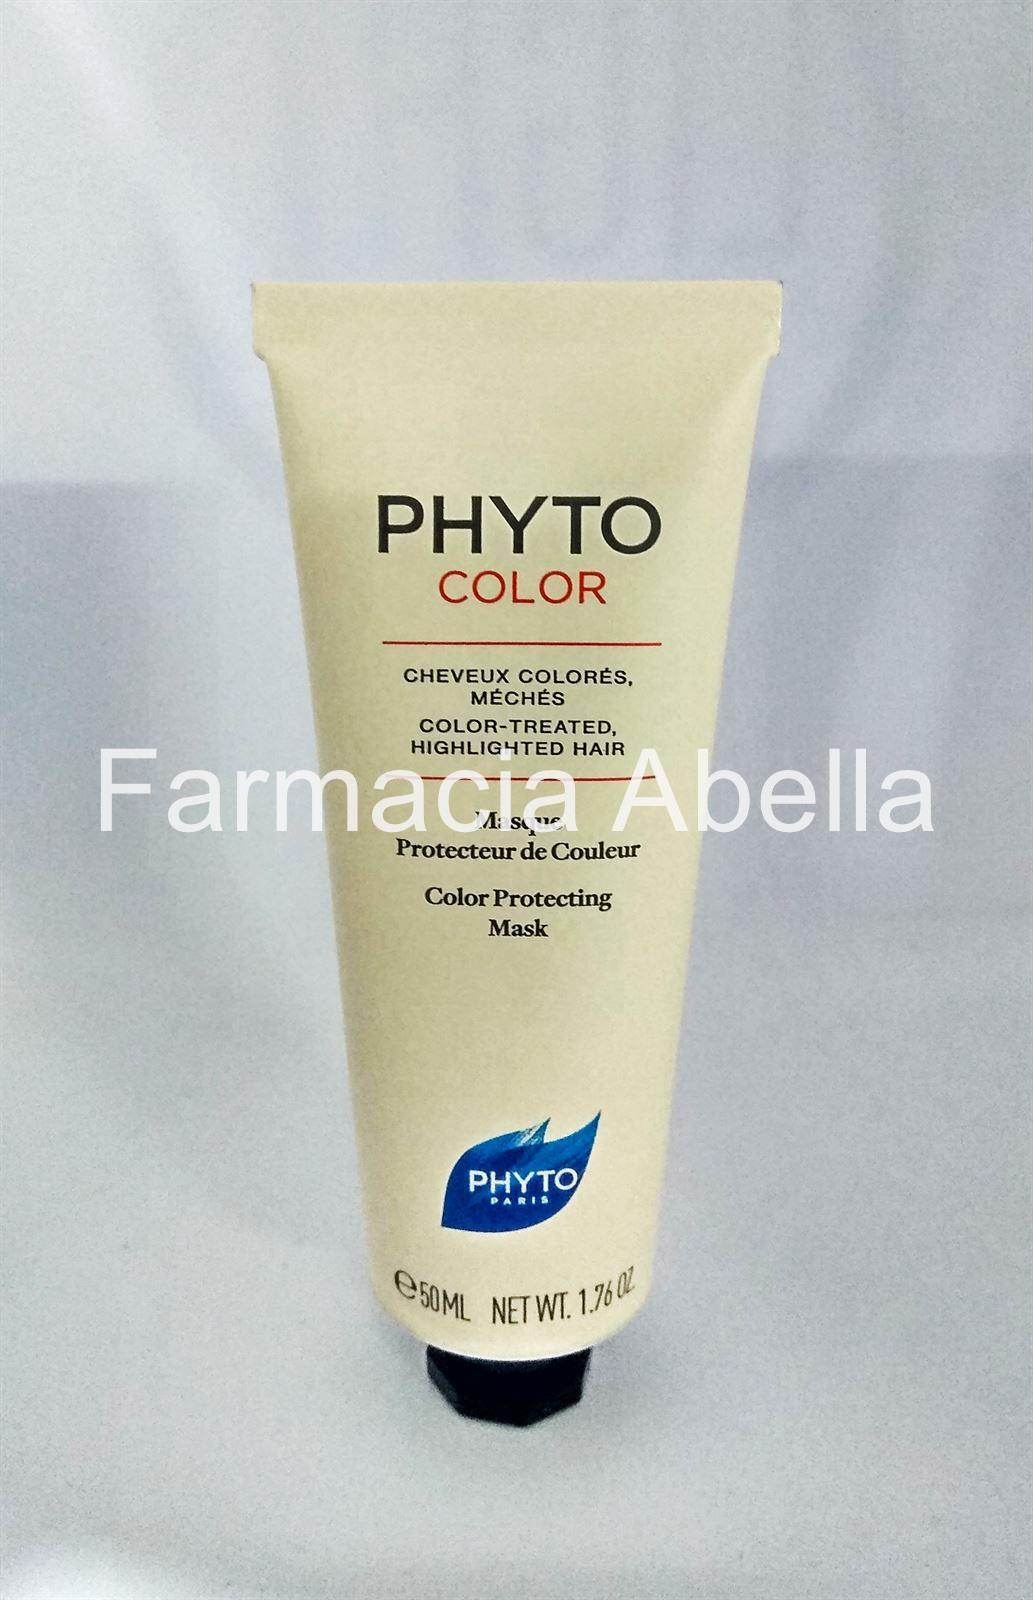 Phytocolor mascarilla protectora del color formato de viaje 50 ml - Imagen 1